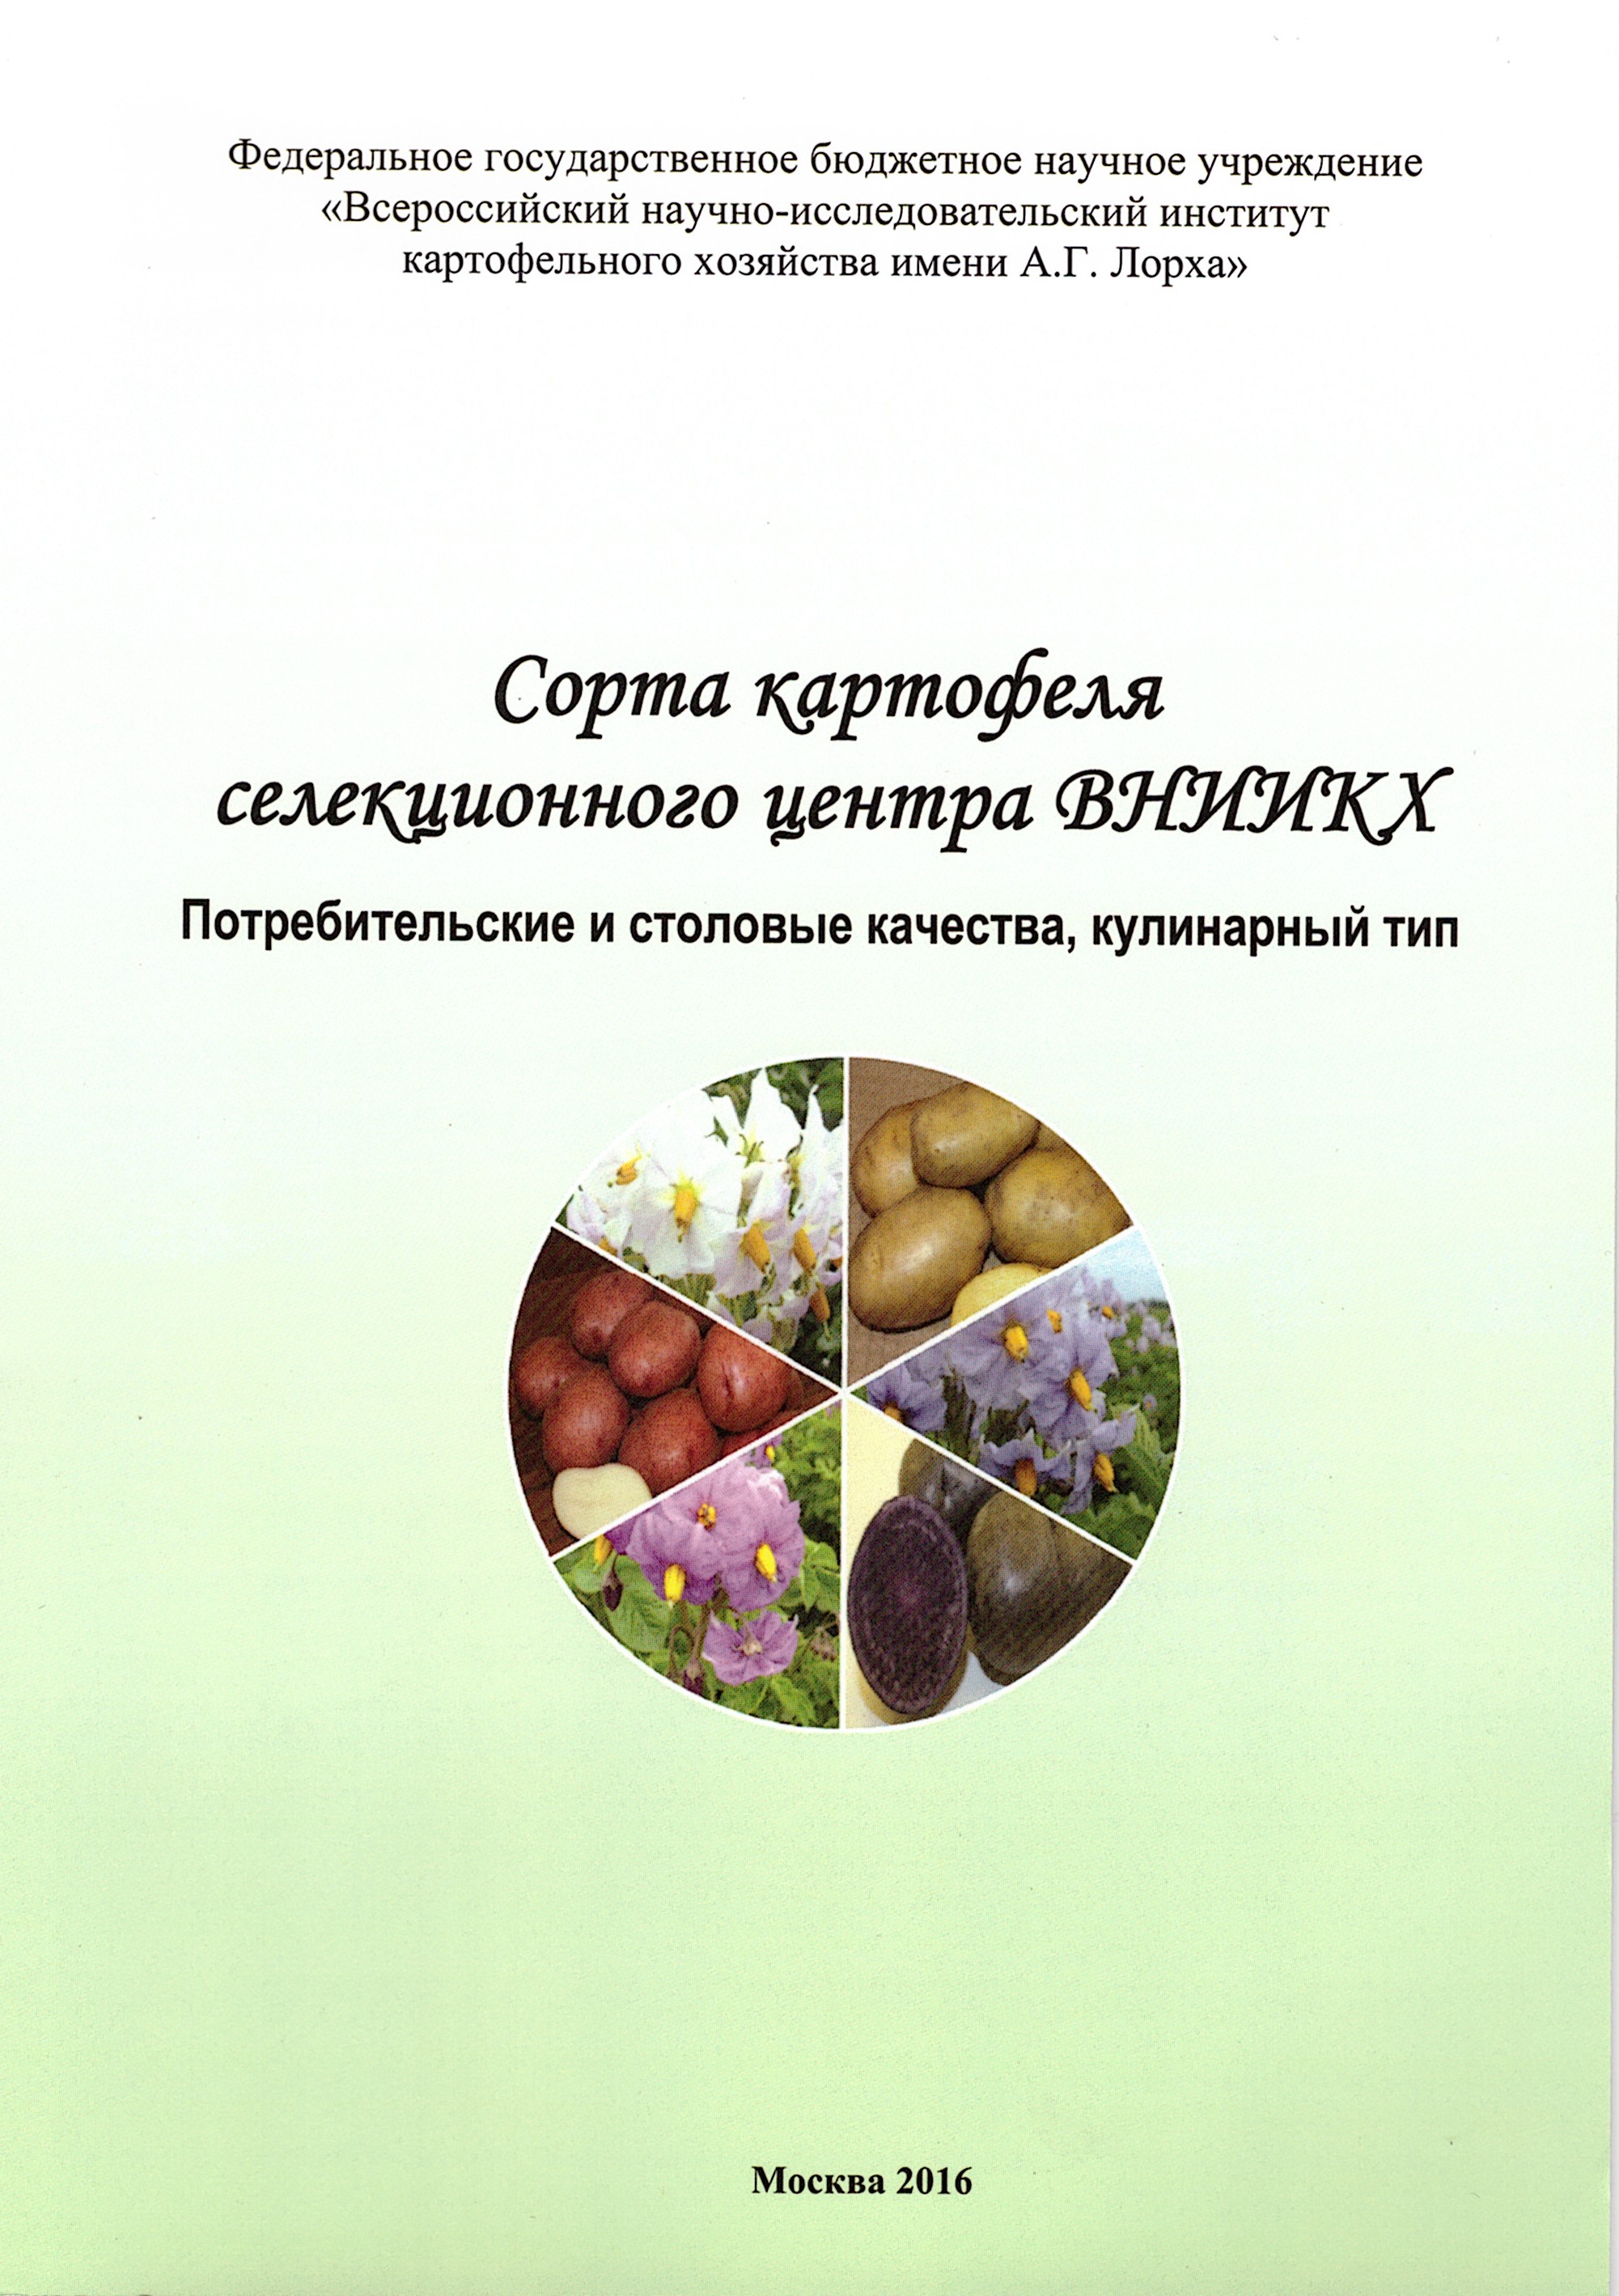 Сорта картофеля селекционного центра ВНИИКХ